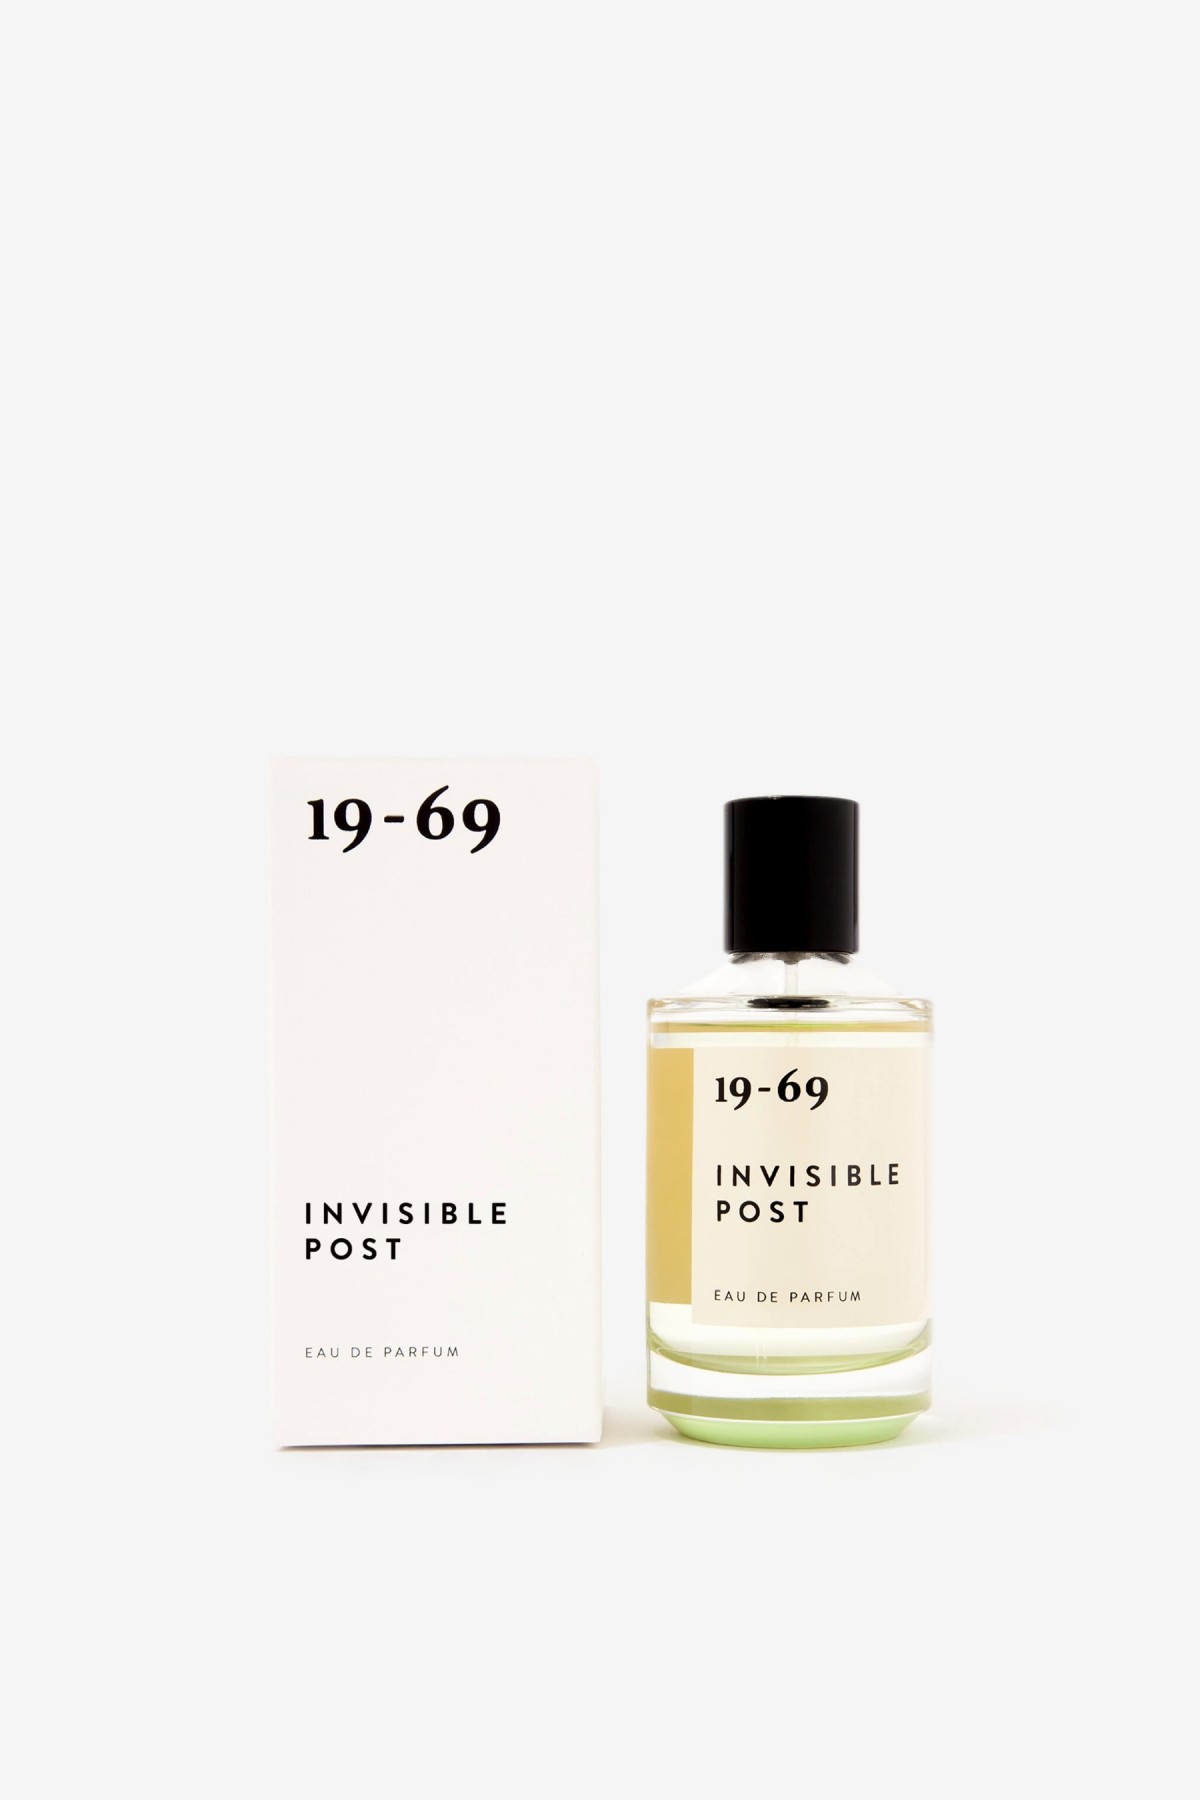 19-69 Invisible Post Eau de Parfum in 50ml